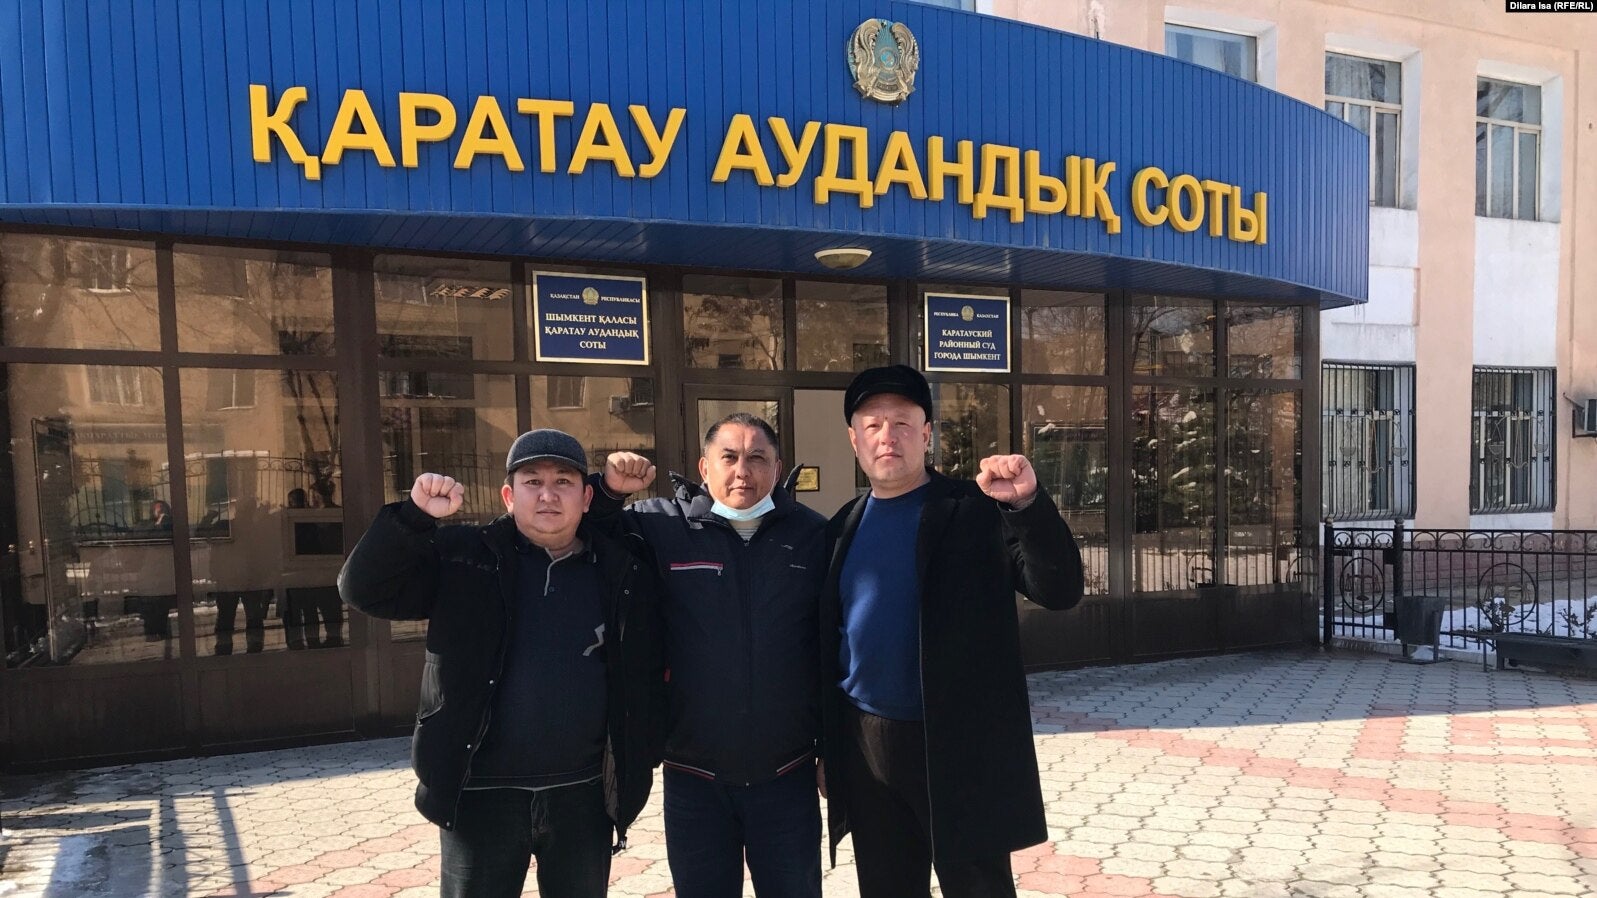 Ерлан Файзуллаев, Нуржан Абильдаев и Жанмурат Аштаев у здания суда в Шымкенте, Казахстан, где их судили по уголовному делу по статье 405 Уголовного кодекса Республики Казахстан. 26 февраля 2021 года.